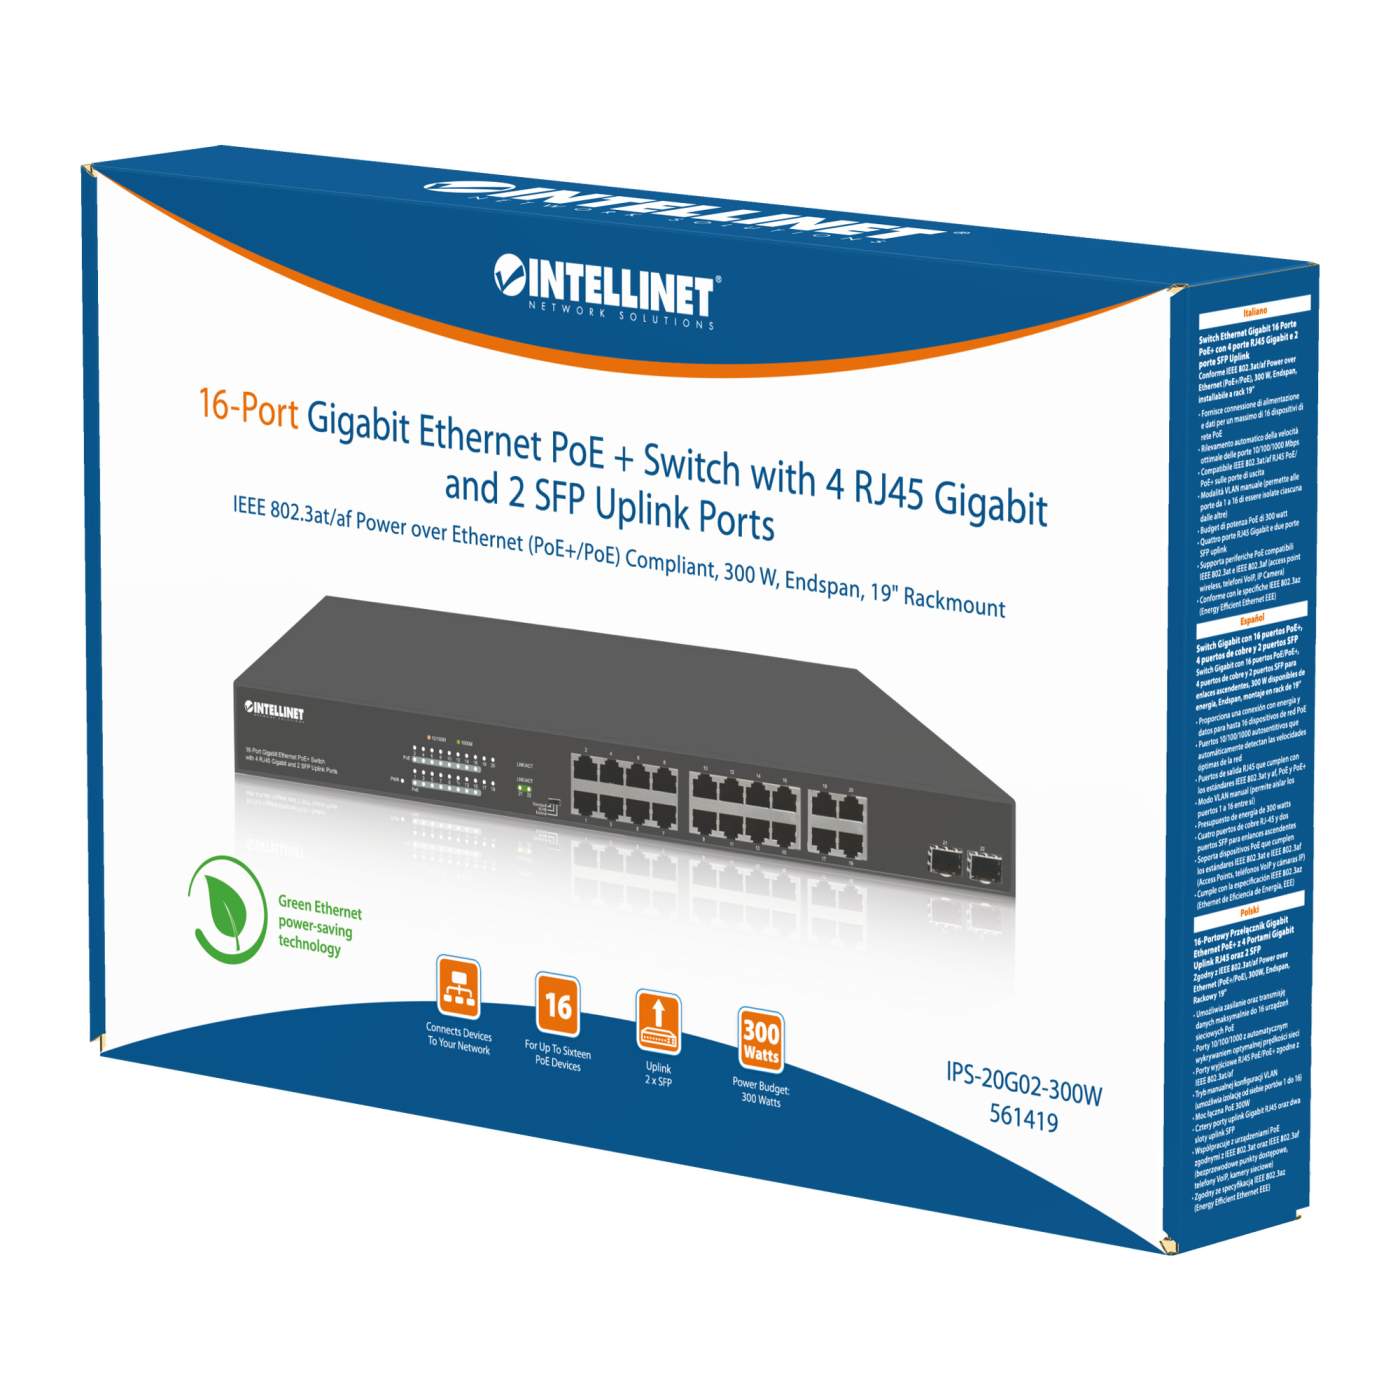 16-Port Gigabit Ethernet PoE+ Switch with 4 RJ45 Gigabit and 2 SFP Uplink Ports Packaging Image 2